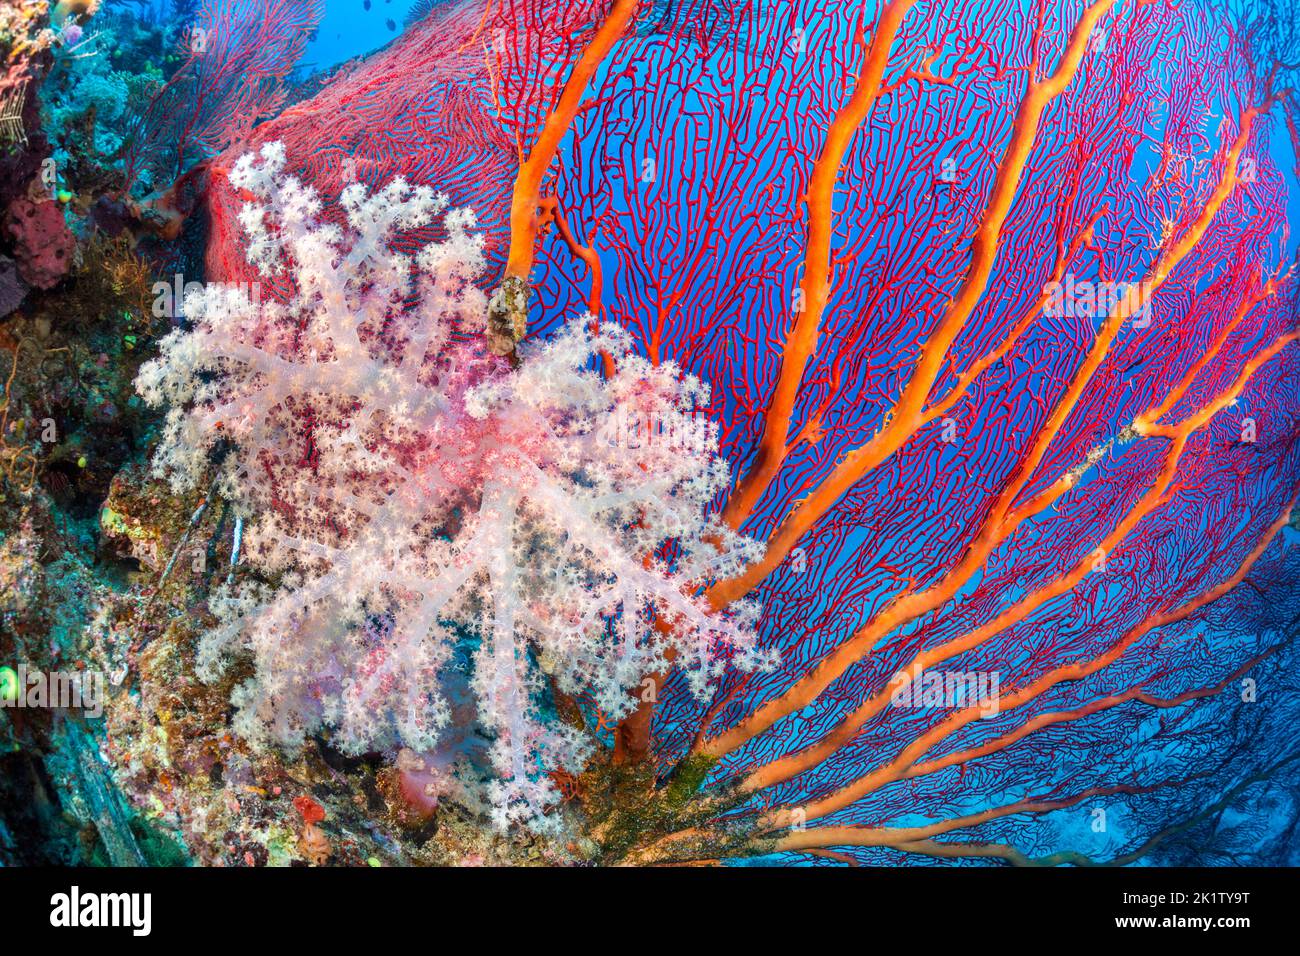 Coral alconario y gorgónico dominan esta escena de arrecife de Fiji. Foto de stock